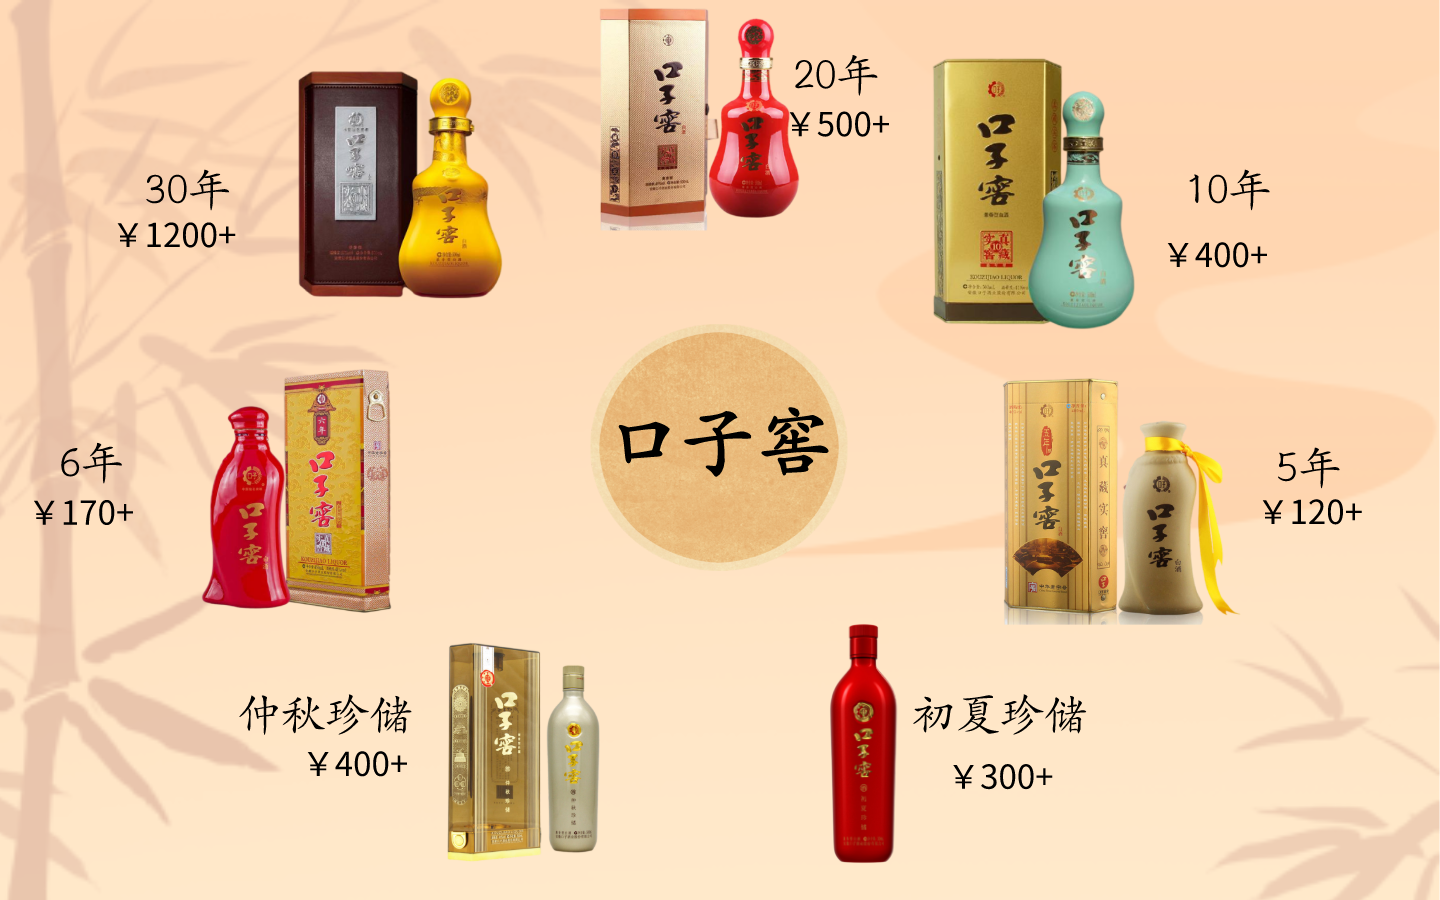 大本营在安徽省淮北市,以低度兼香型白酒闻名,是安徽白酒头部品牌